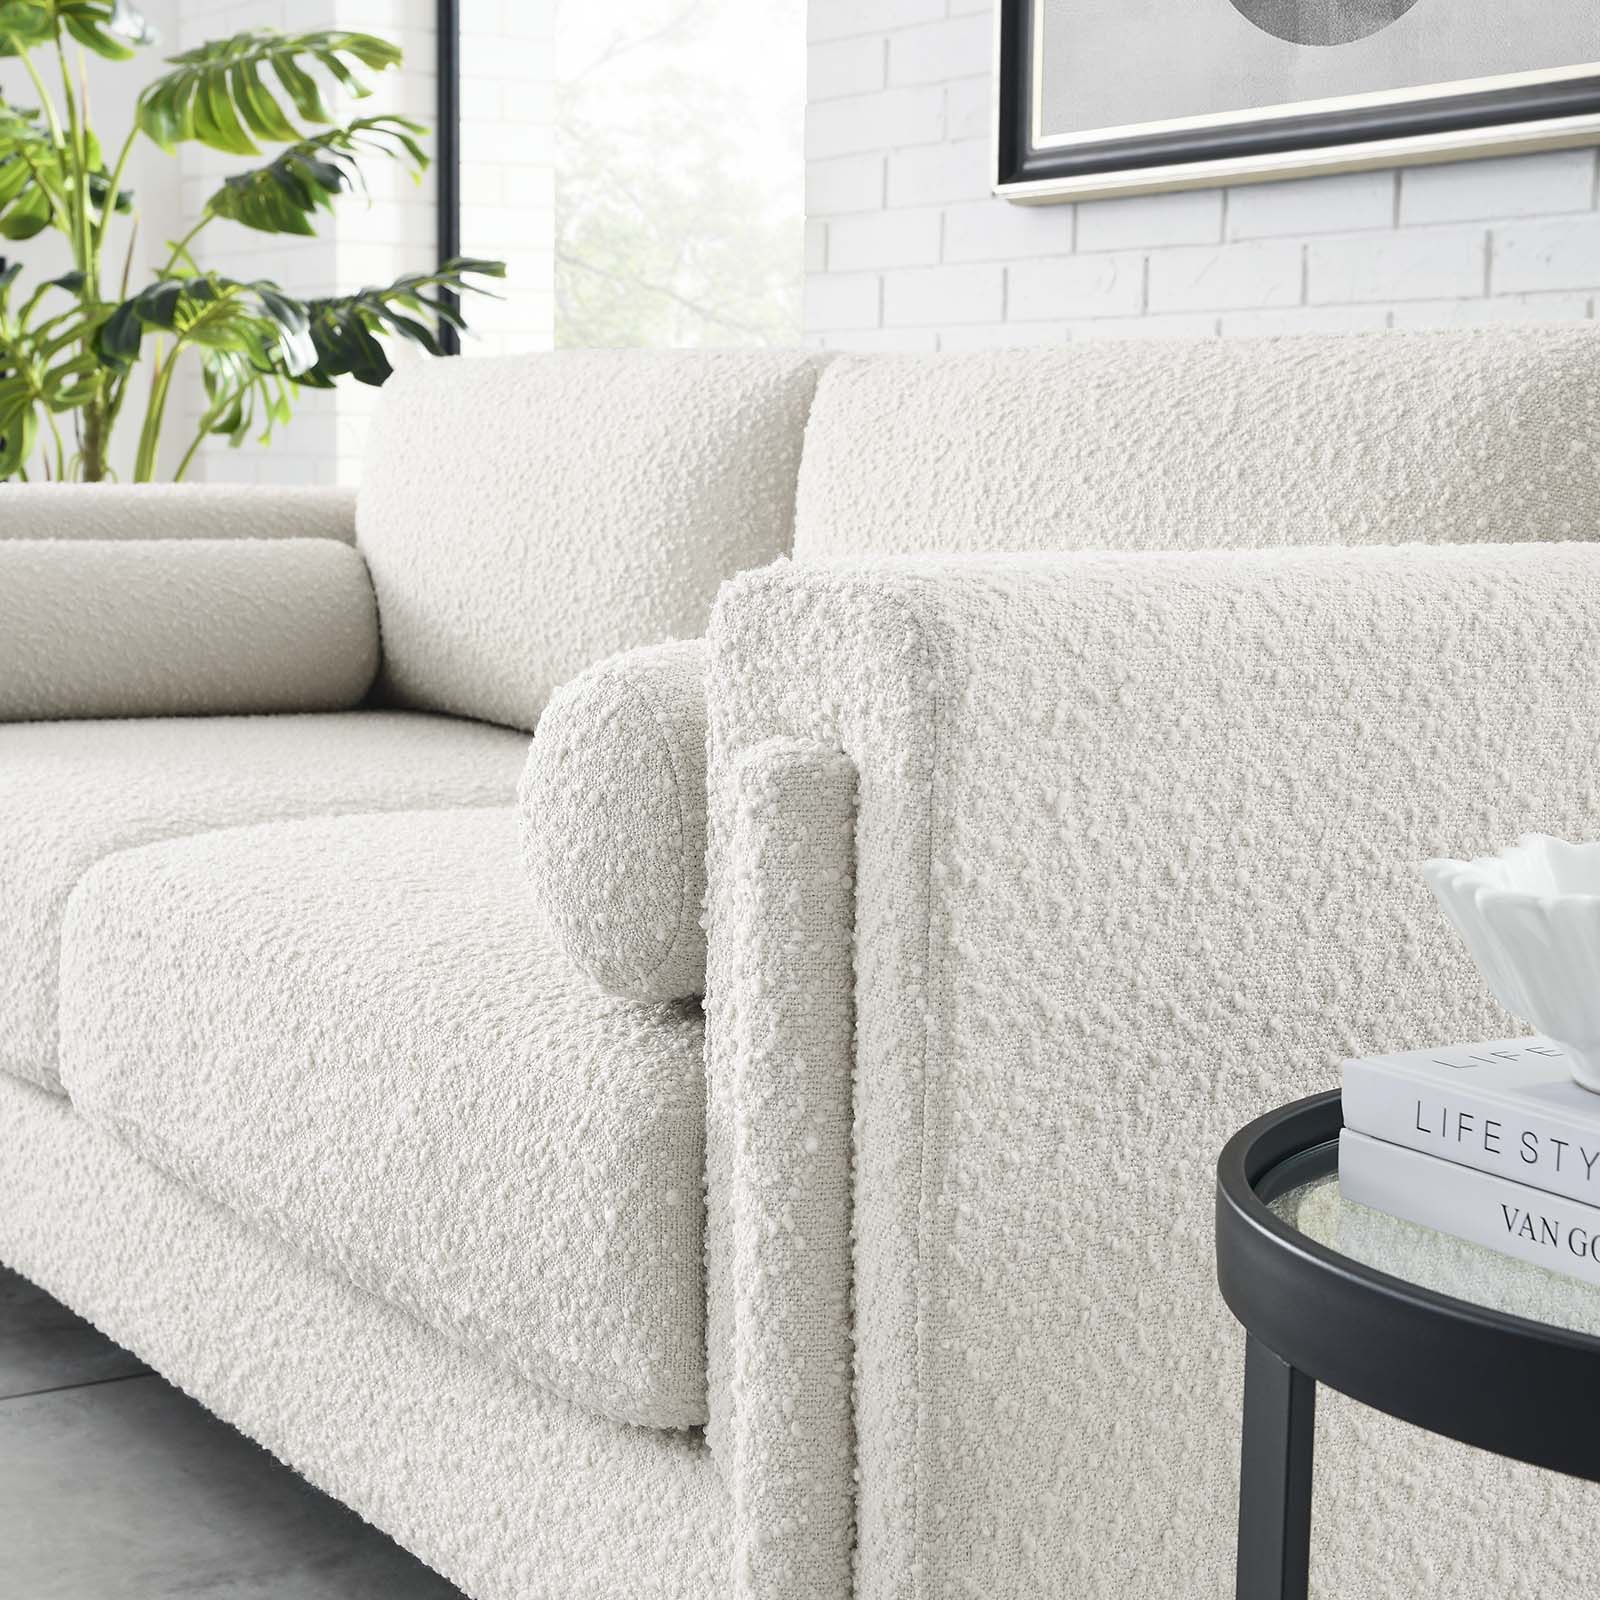 Visible Boucle Fabric Sofa